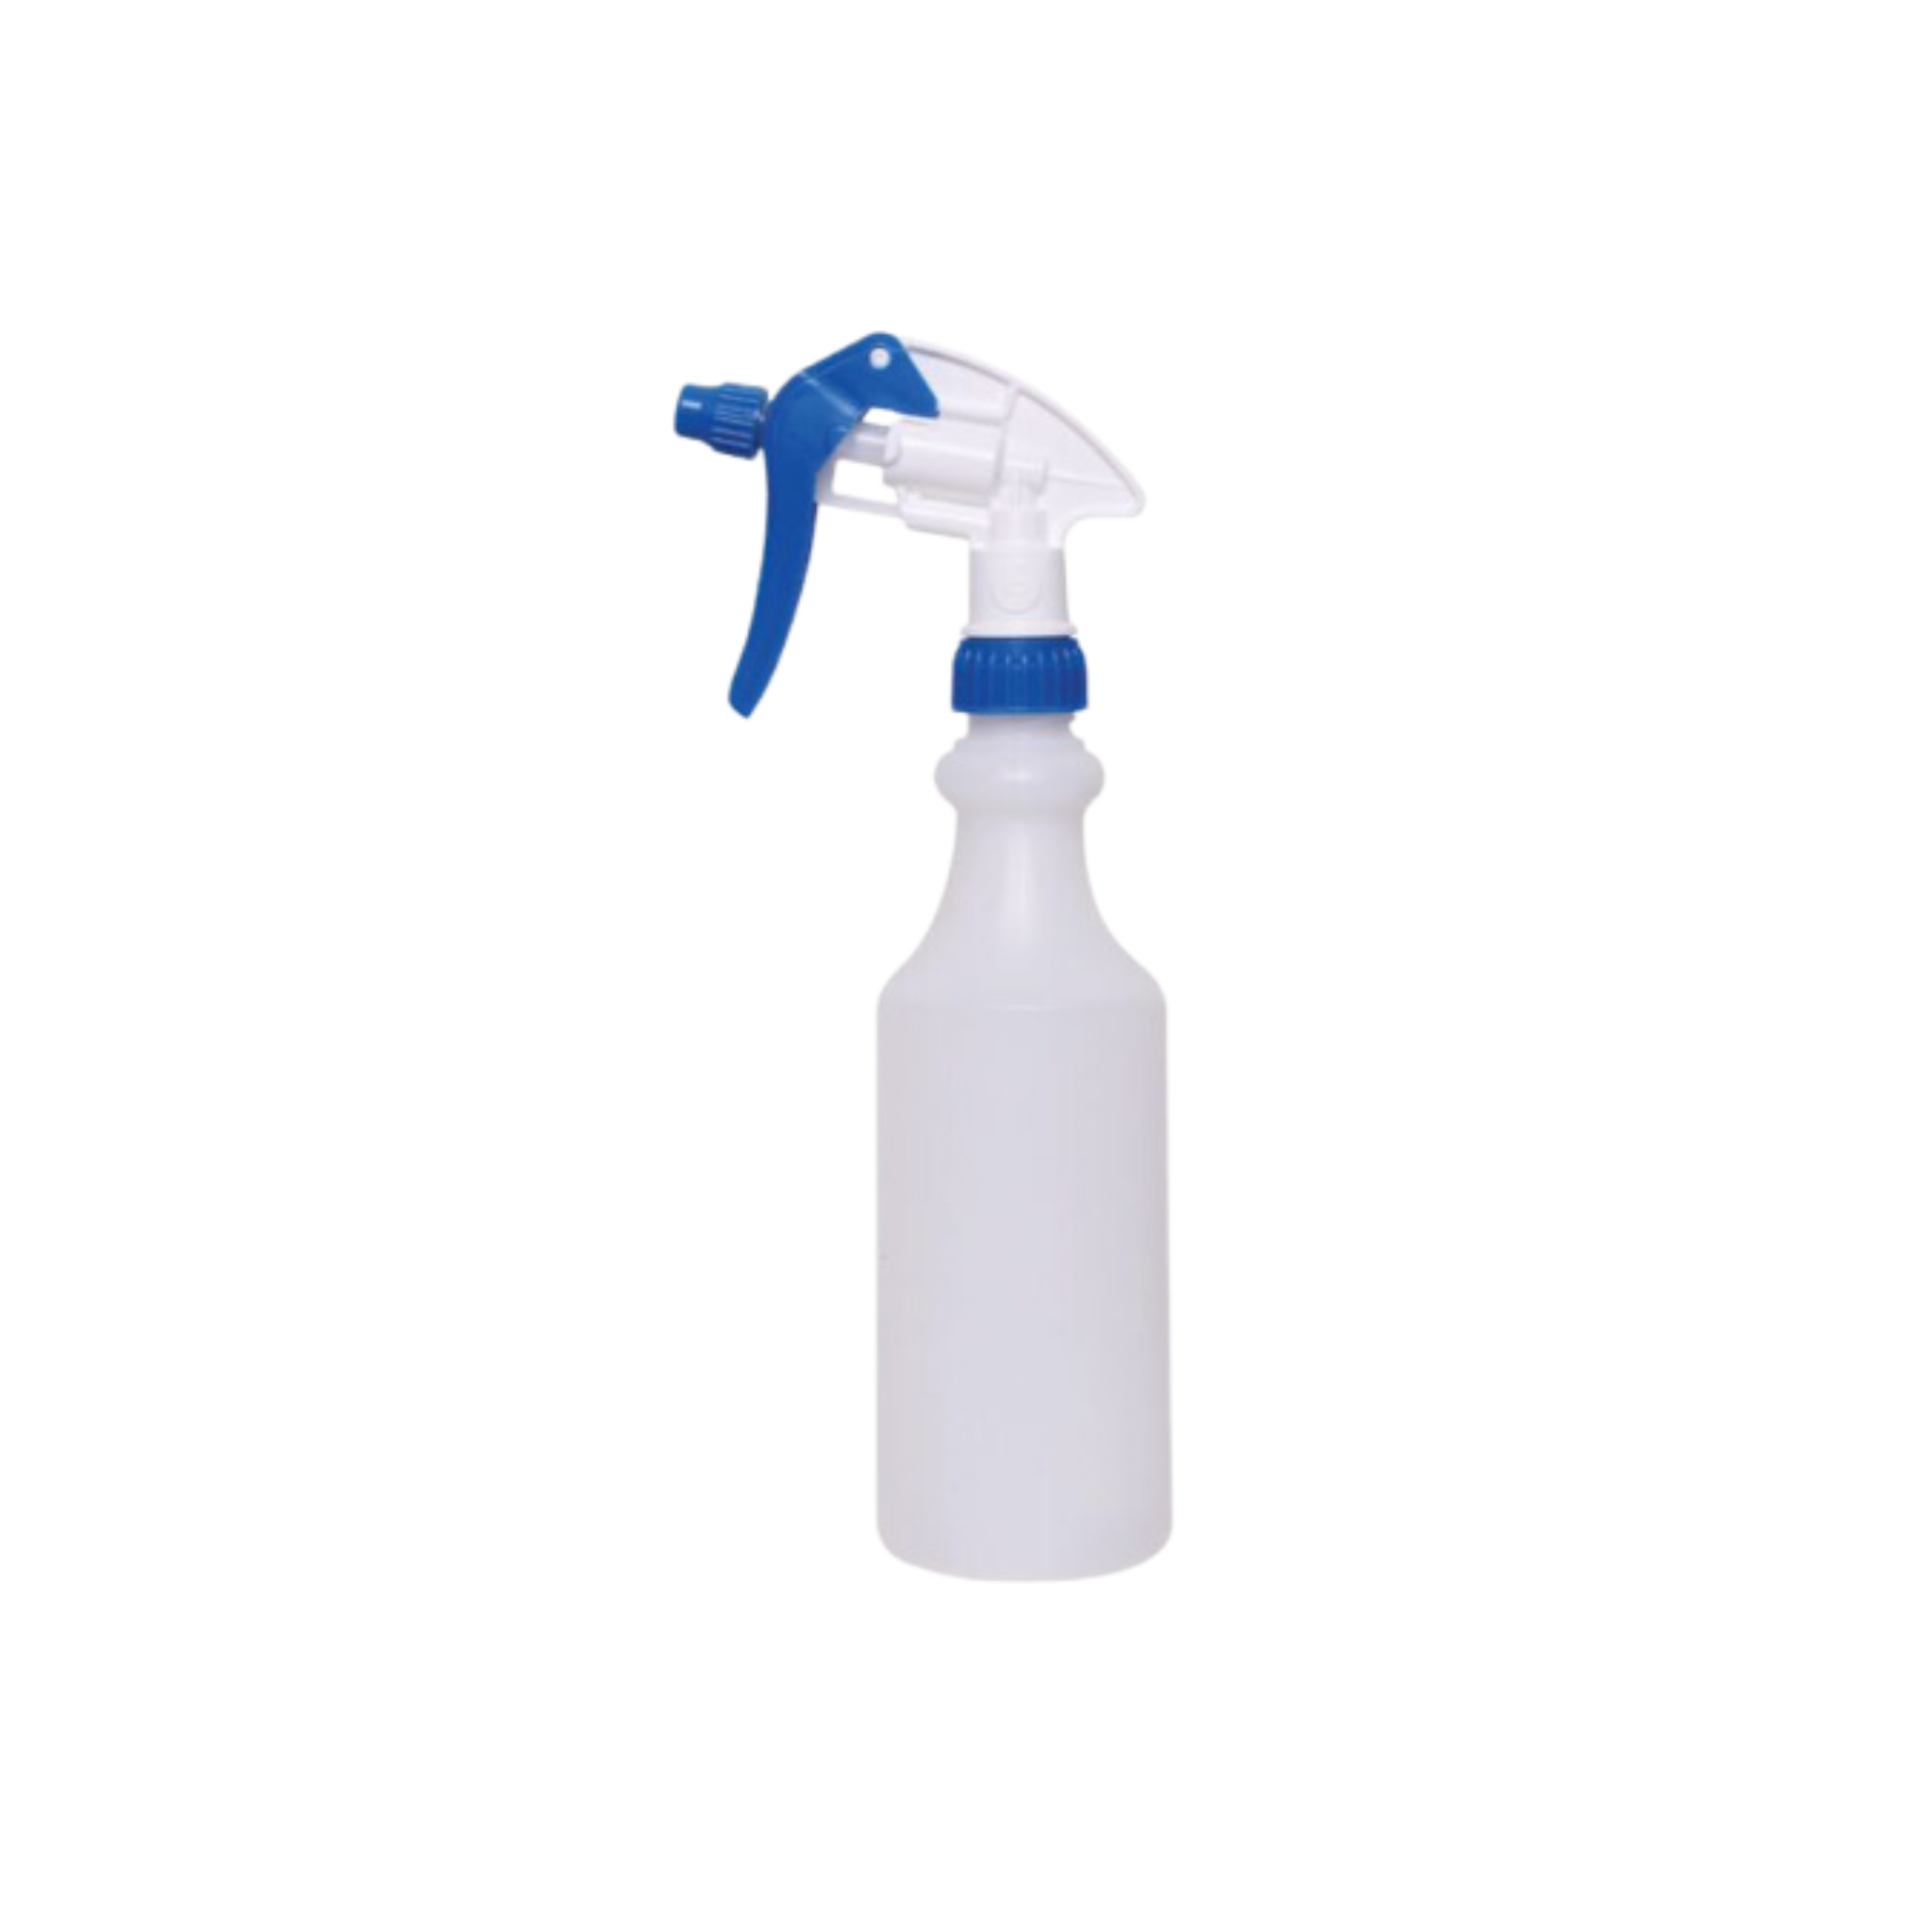 NAN Spray Bottle 500ml w/ Trigger - Blue